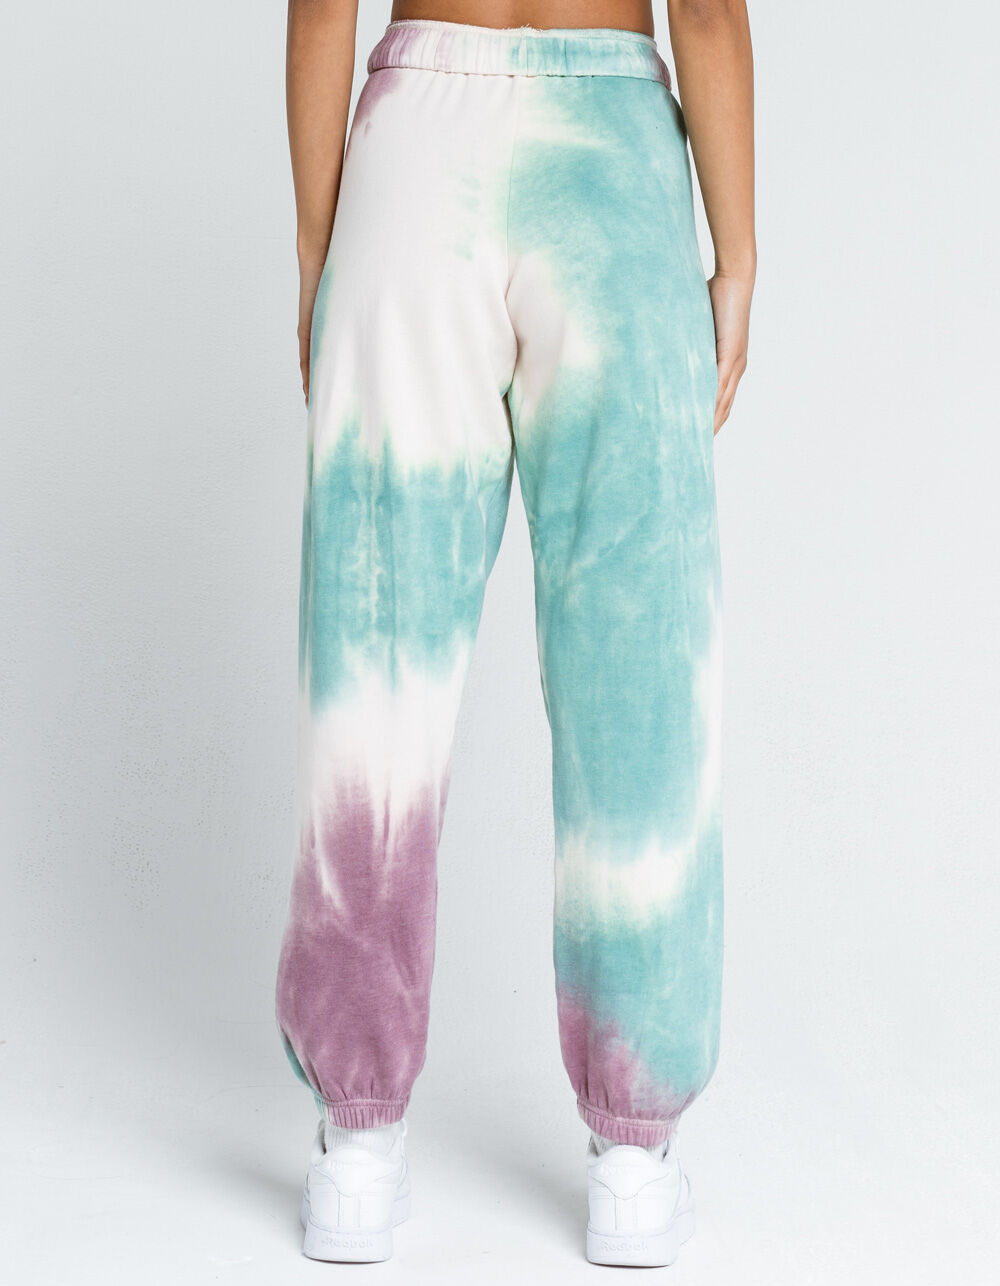 Women's Tie-Dye Joggers Sweatpants by Chaser